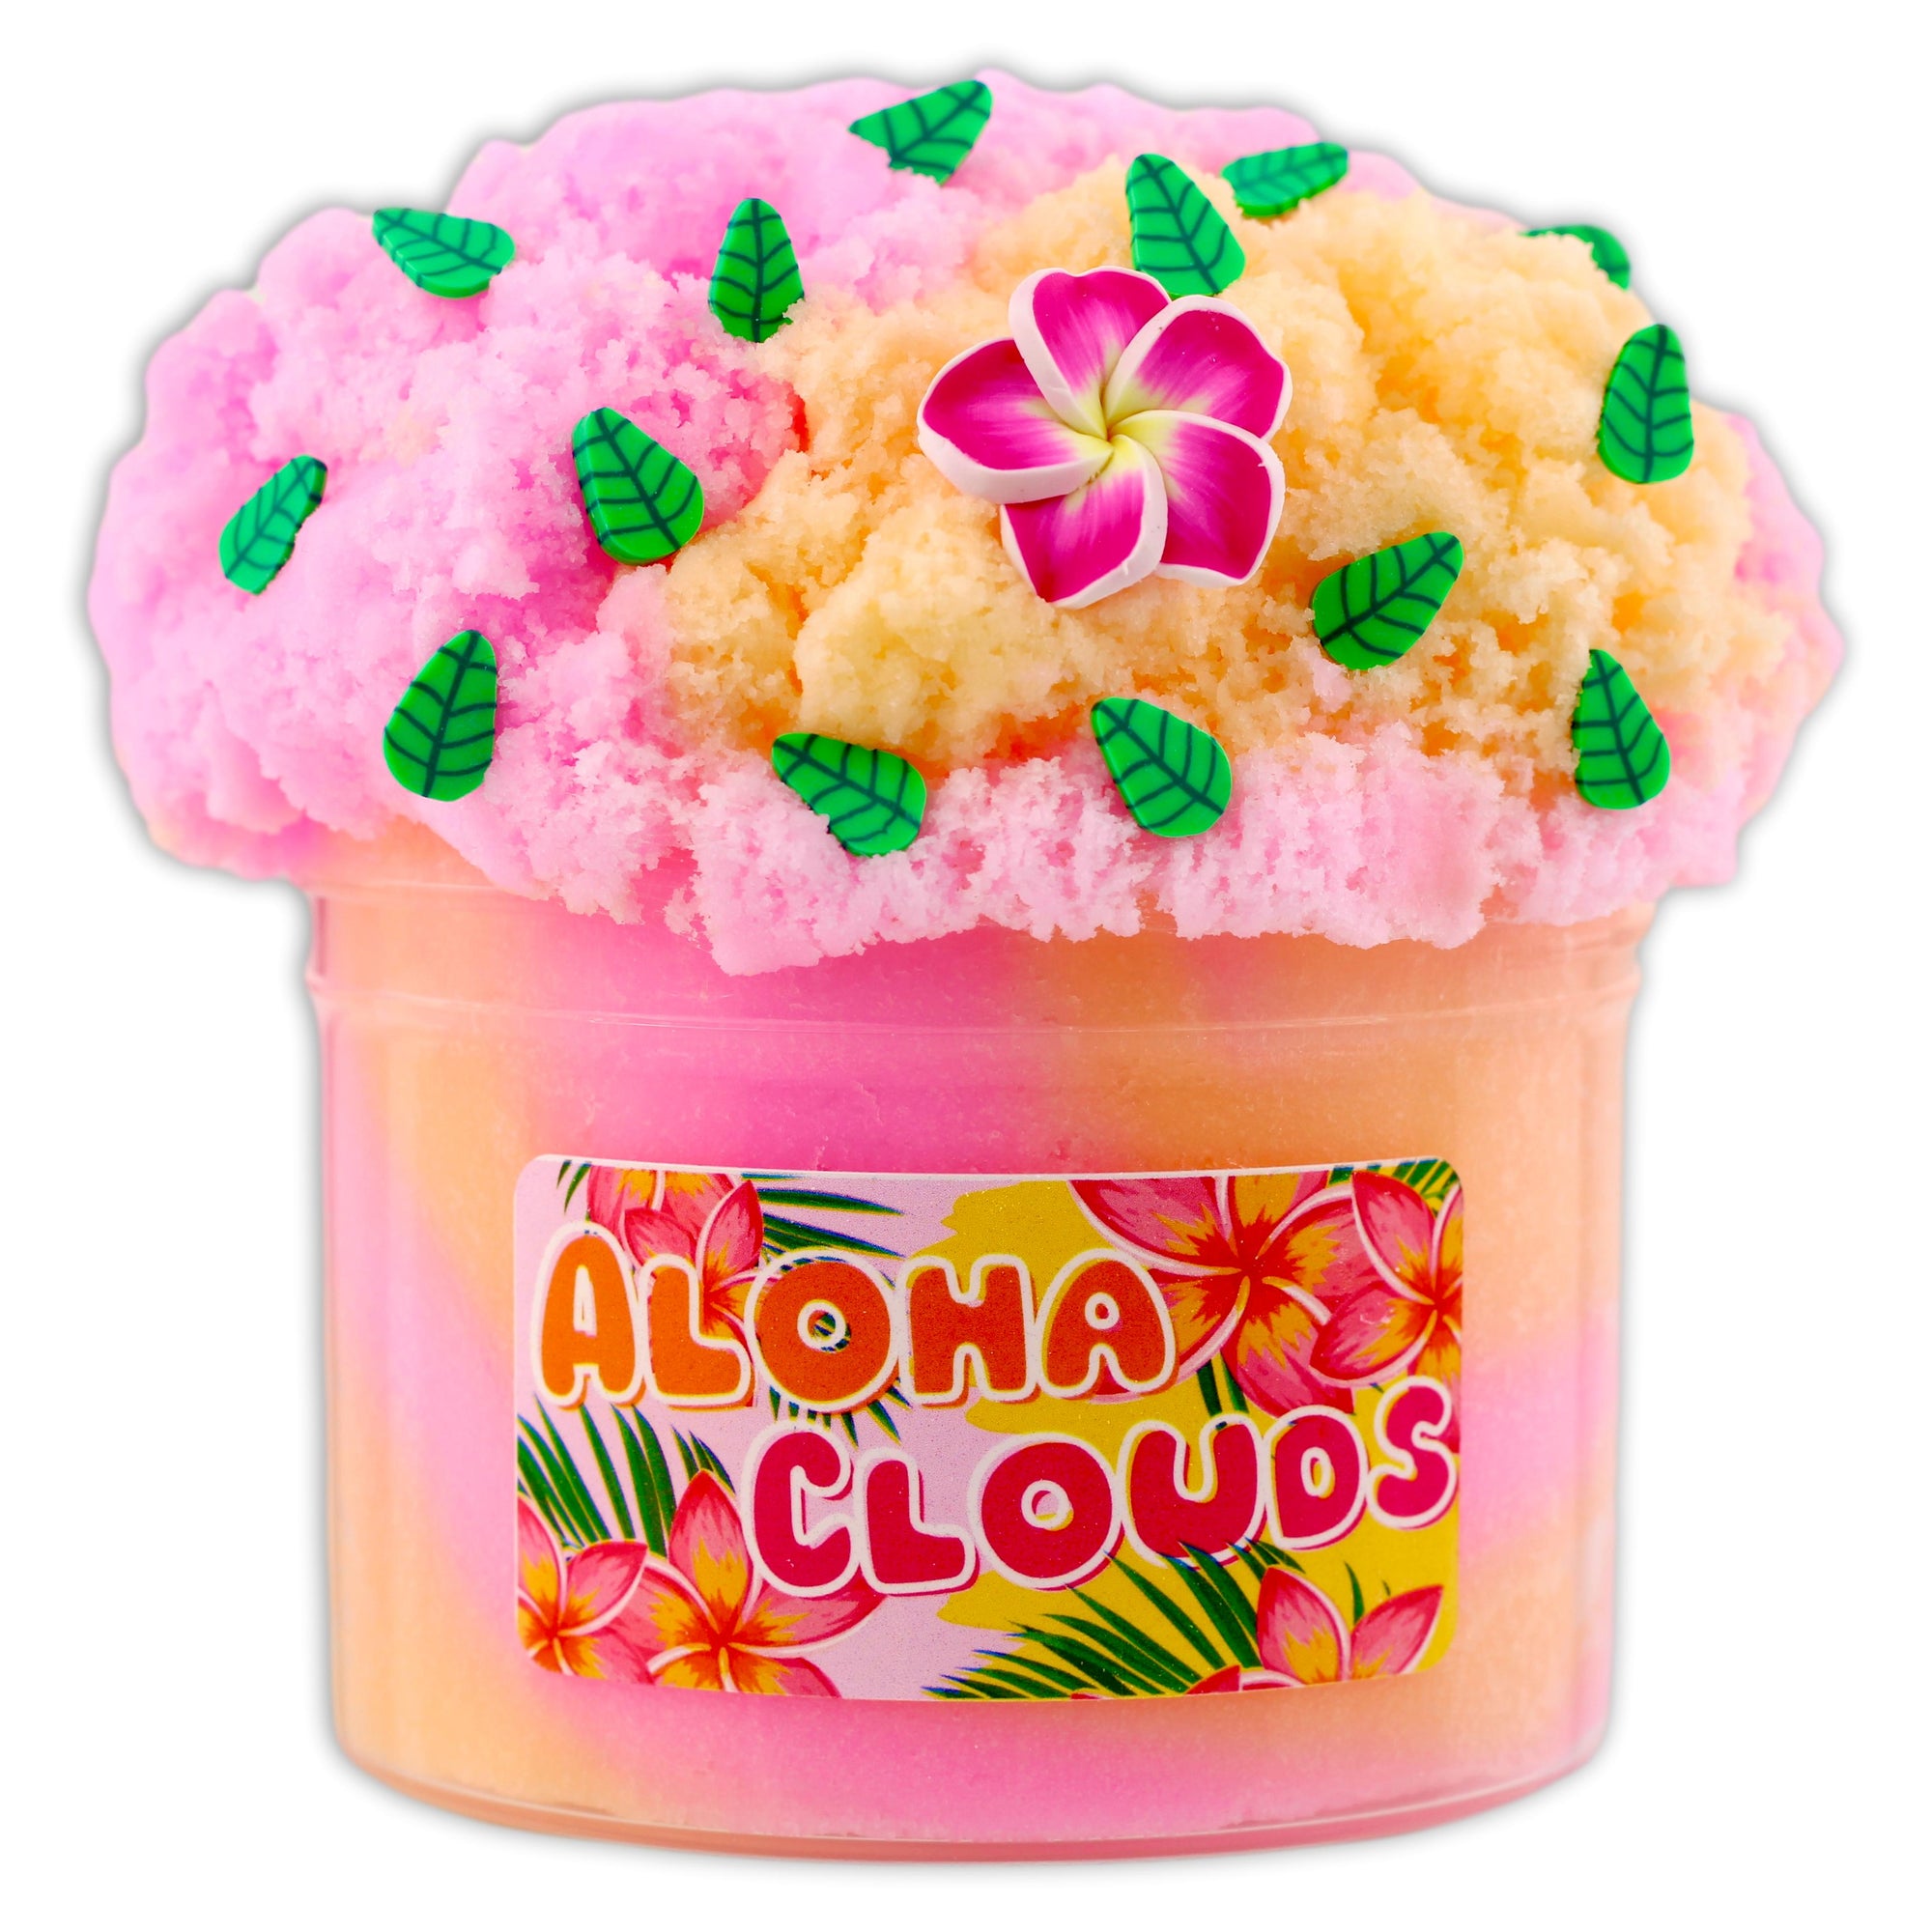 Aloha Clouds Cloud Slime - Shop Slime - Dope Slimes